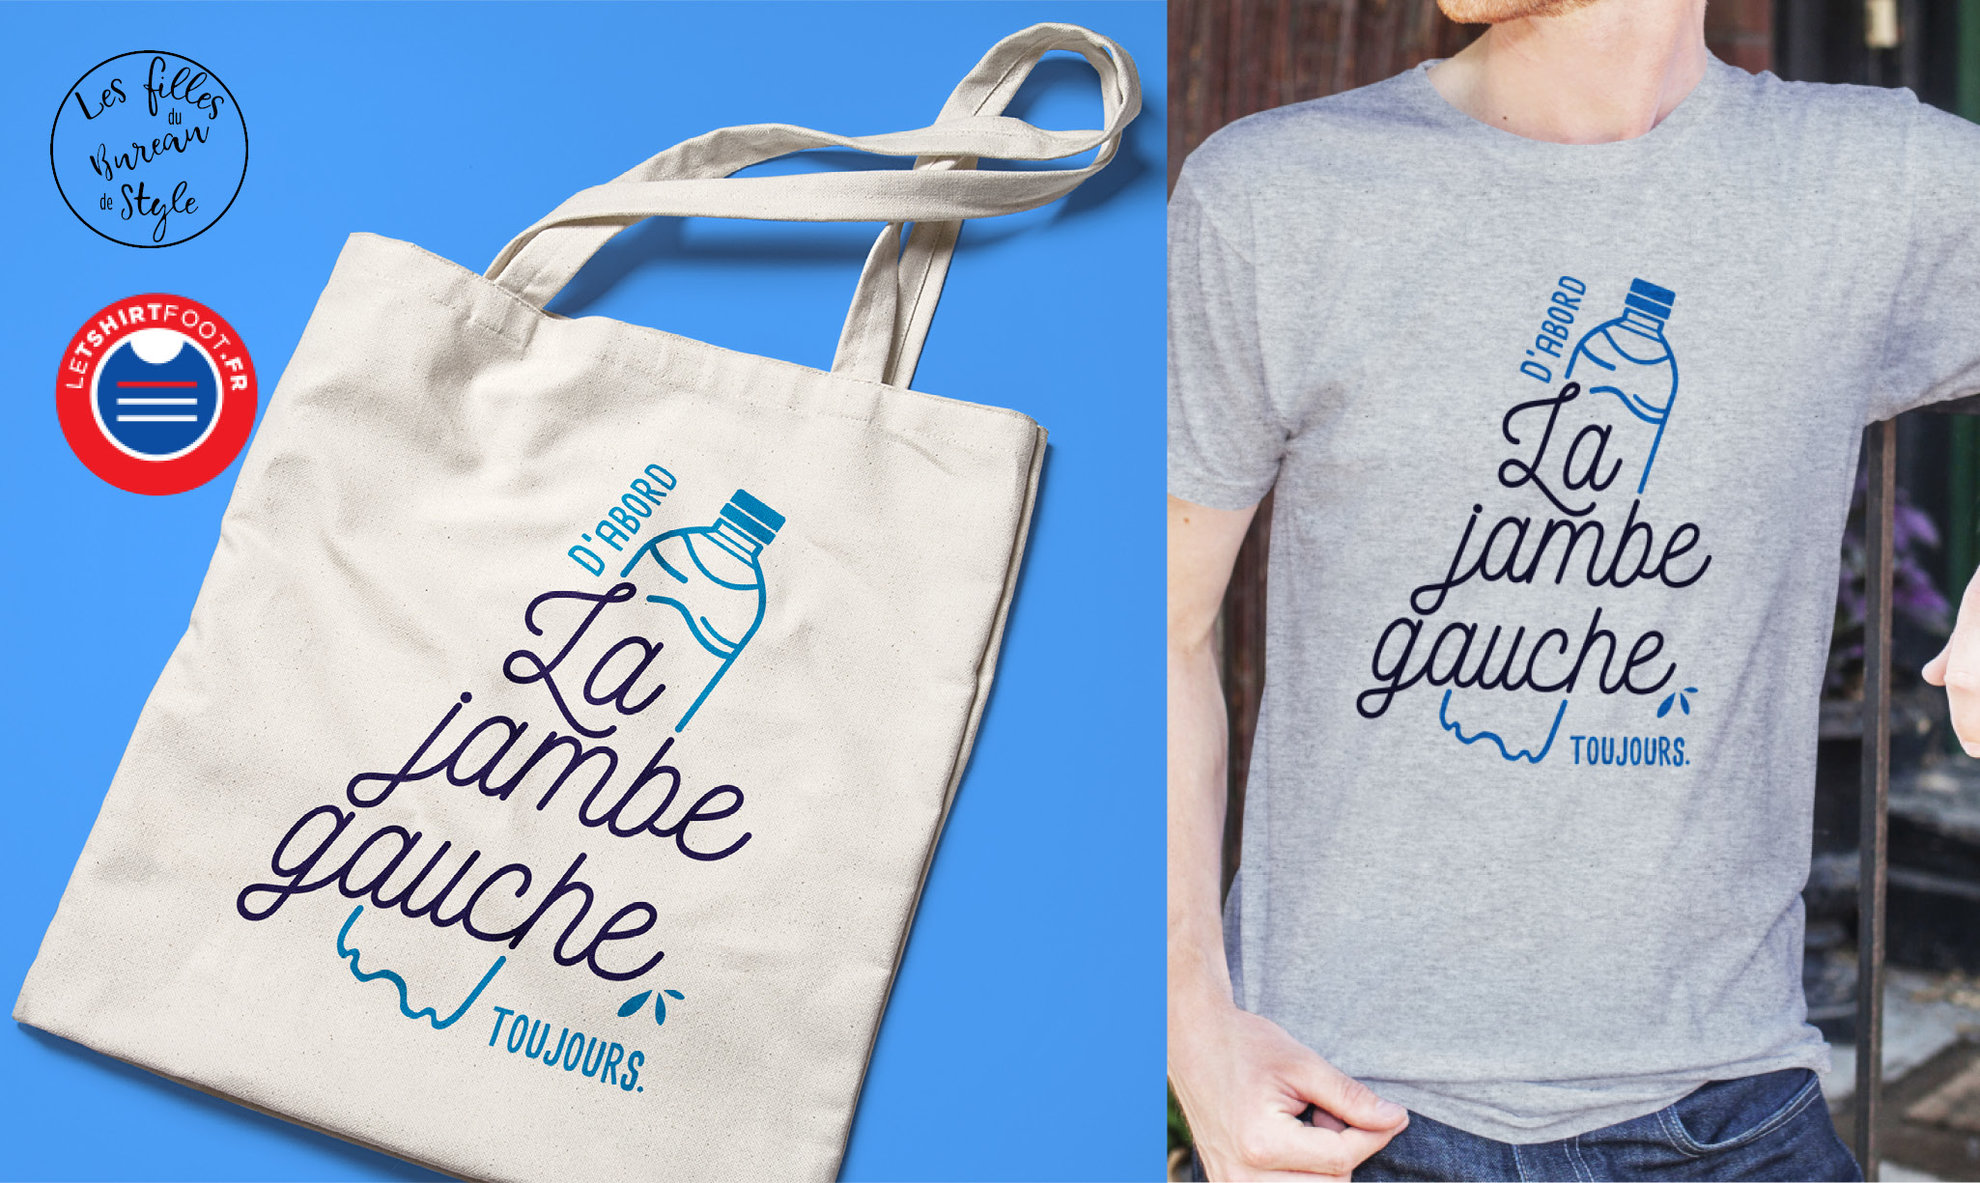 Design Message : dessin et calligraphique sur divers produit, t-shirt, tote bag,  pour Letshirtfoot.fr